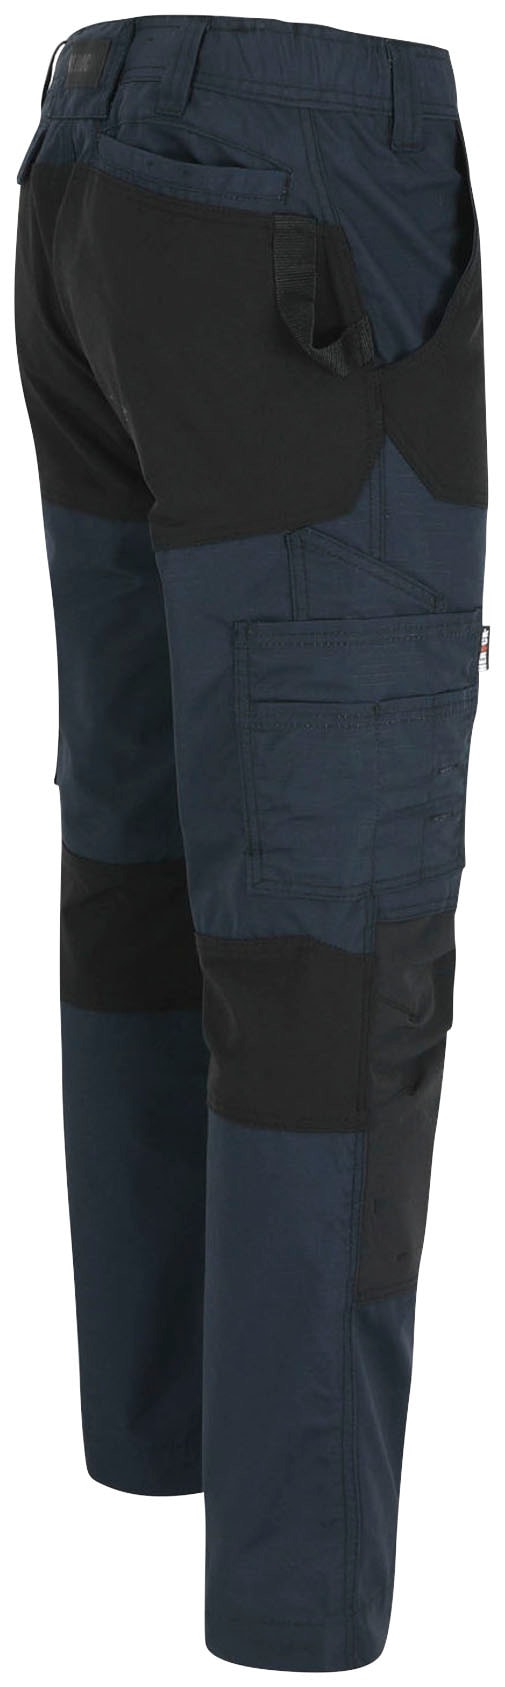 Herock Arbeitshose »Hector Hoses«, Multi-Pocket, 4-Wege-Stretch, verdeckter  Knopf, verstärkte Knietaschen online bestellen